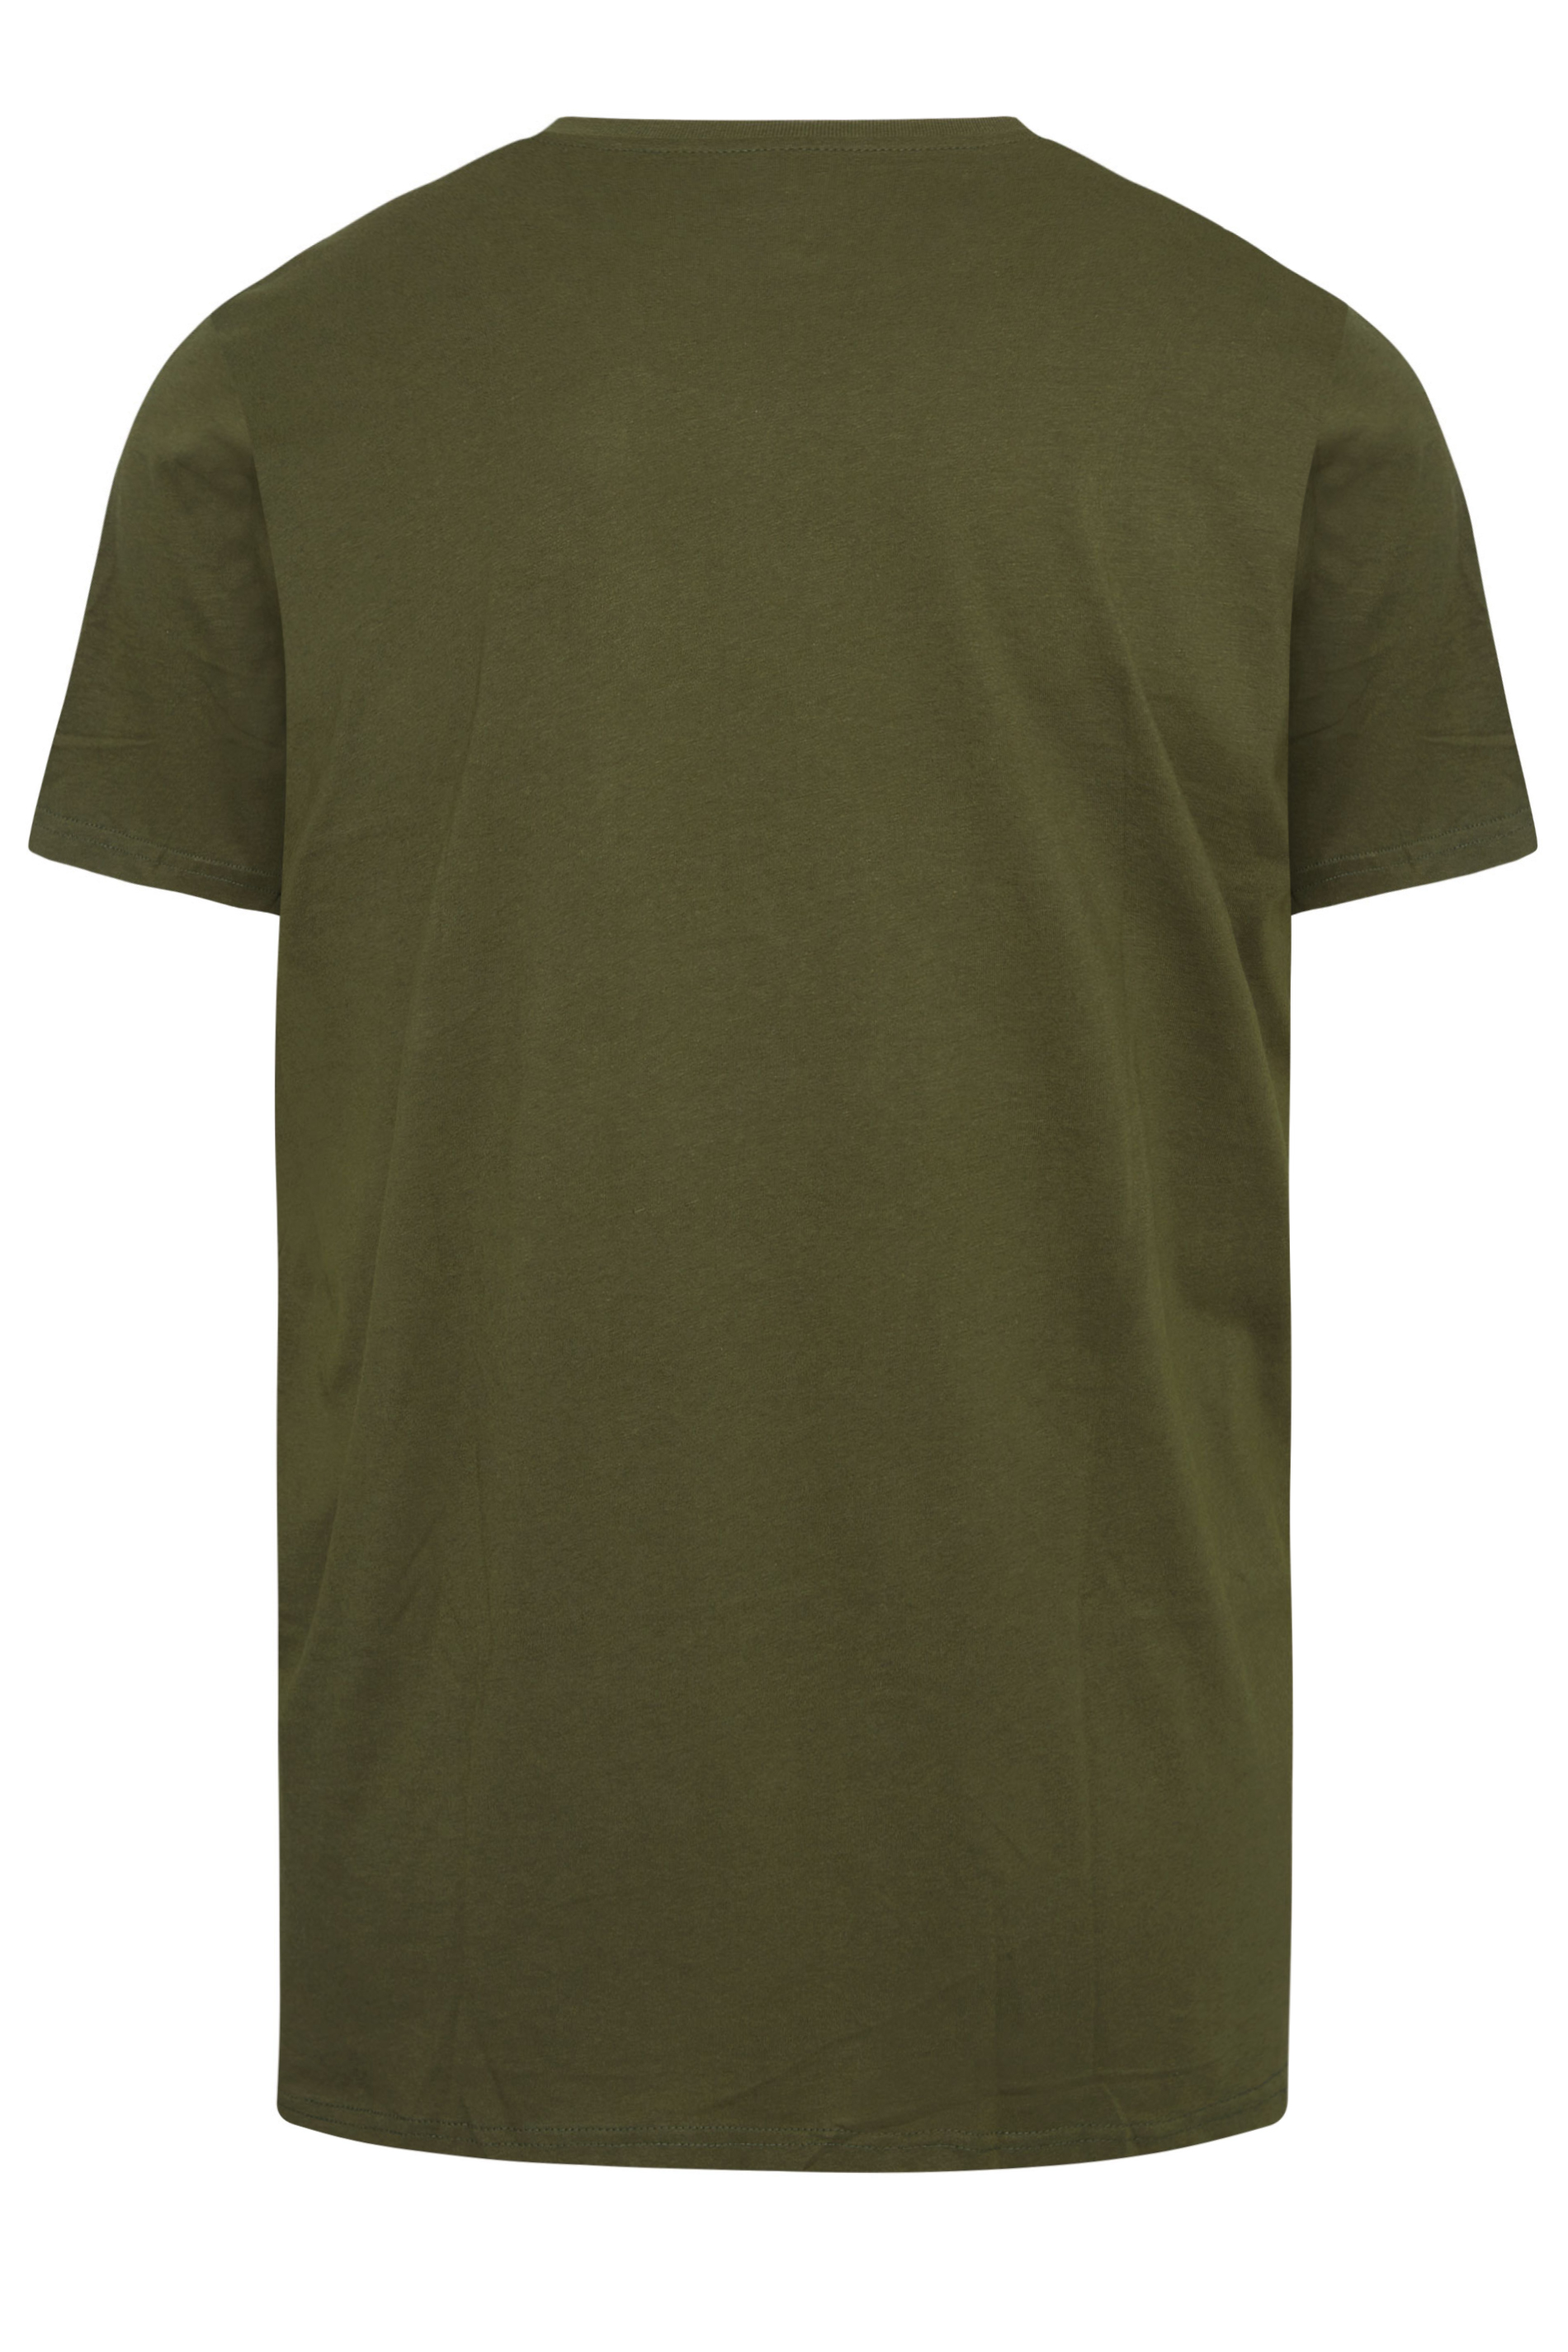 BadRhino Khaki Green Core T-Shirt | BadRhino